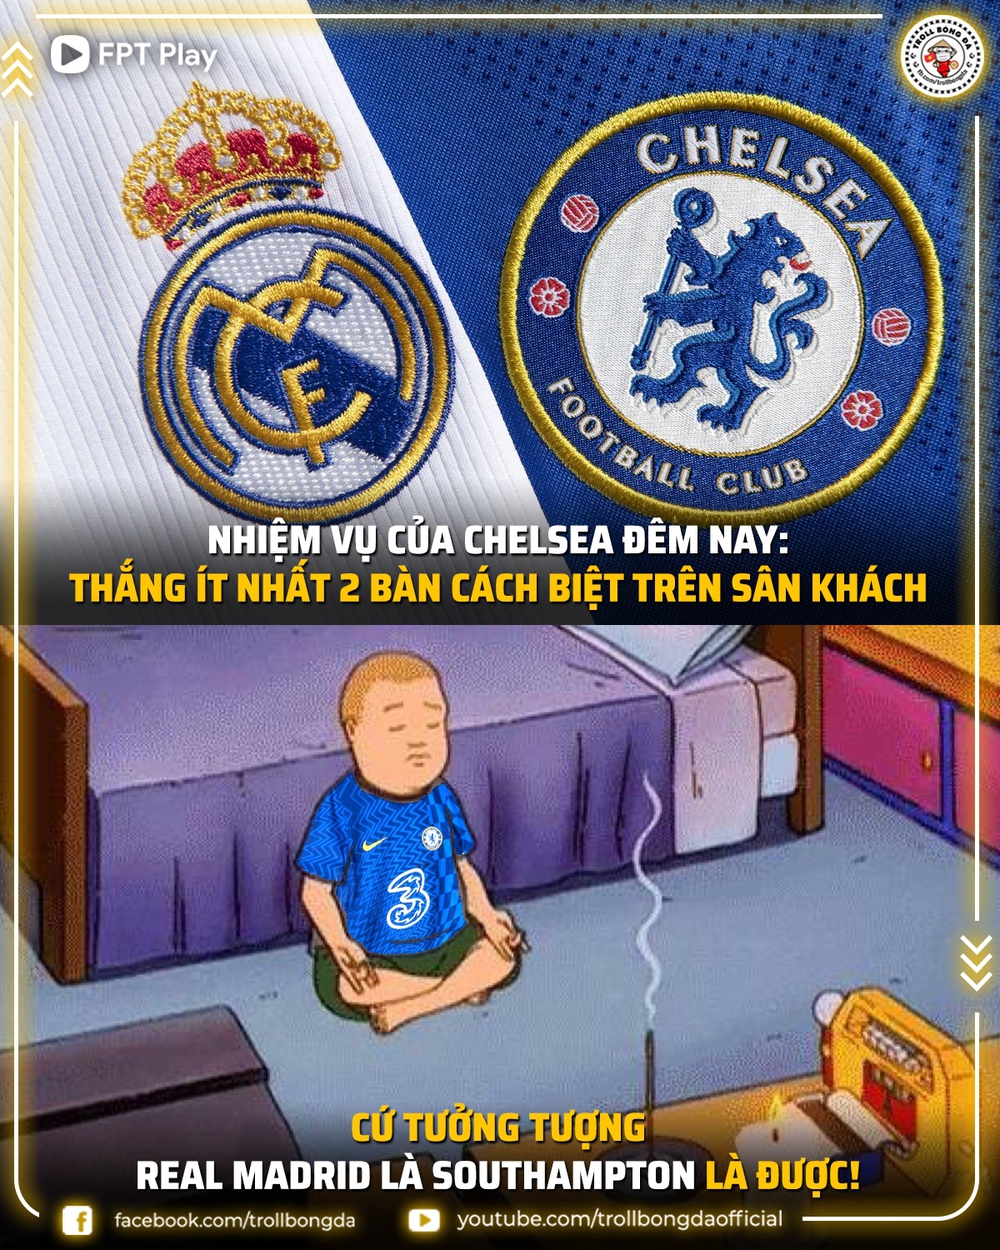 Biếm họa 24h: Nhiệm vụ bất khả thi của Chelsea - Ảnh 1.